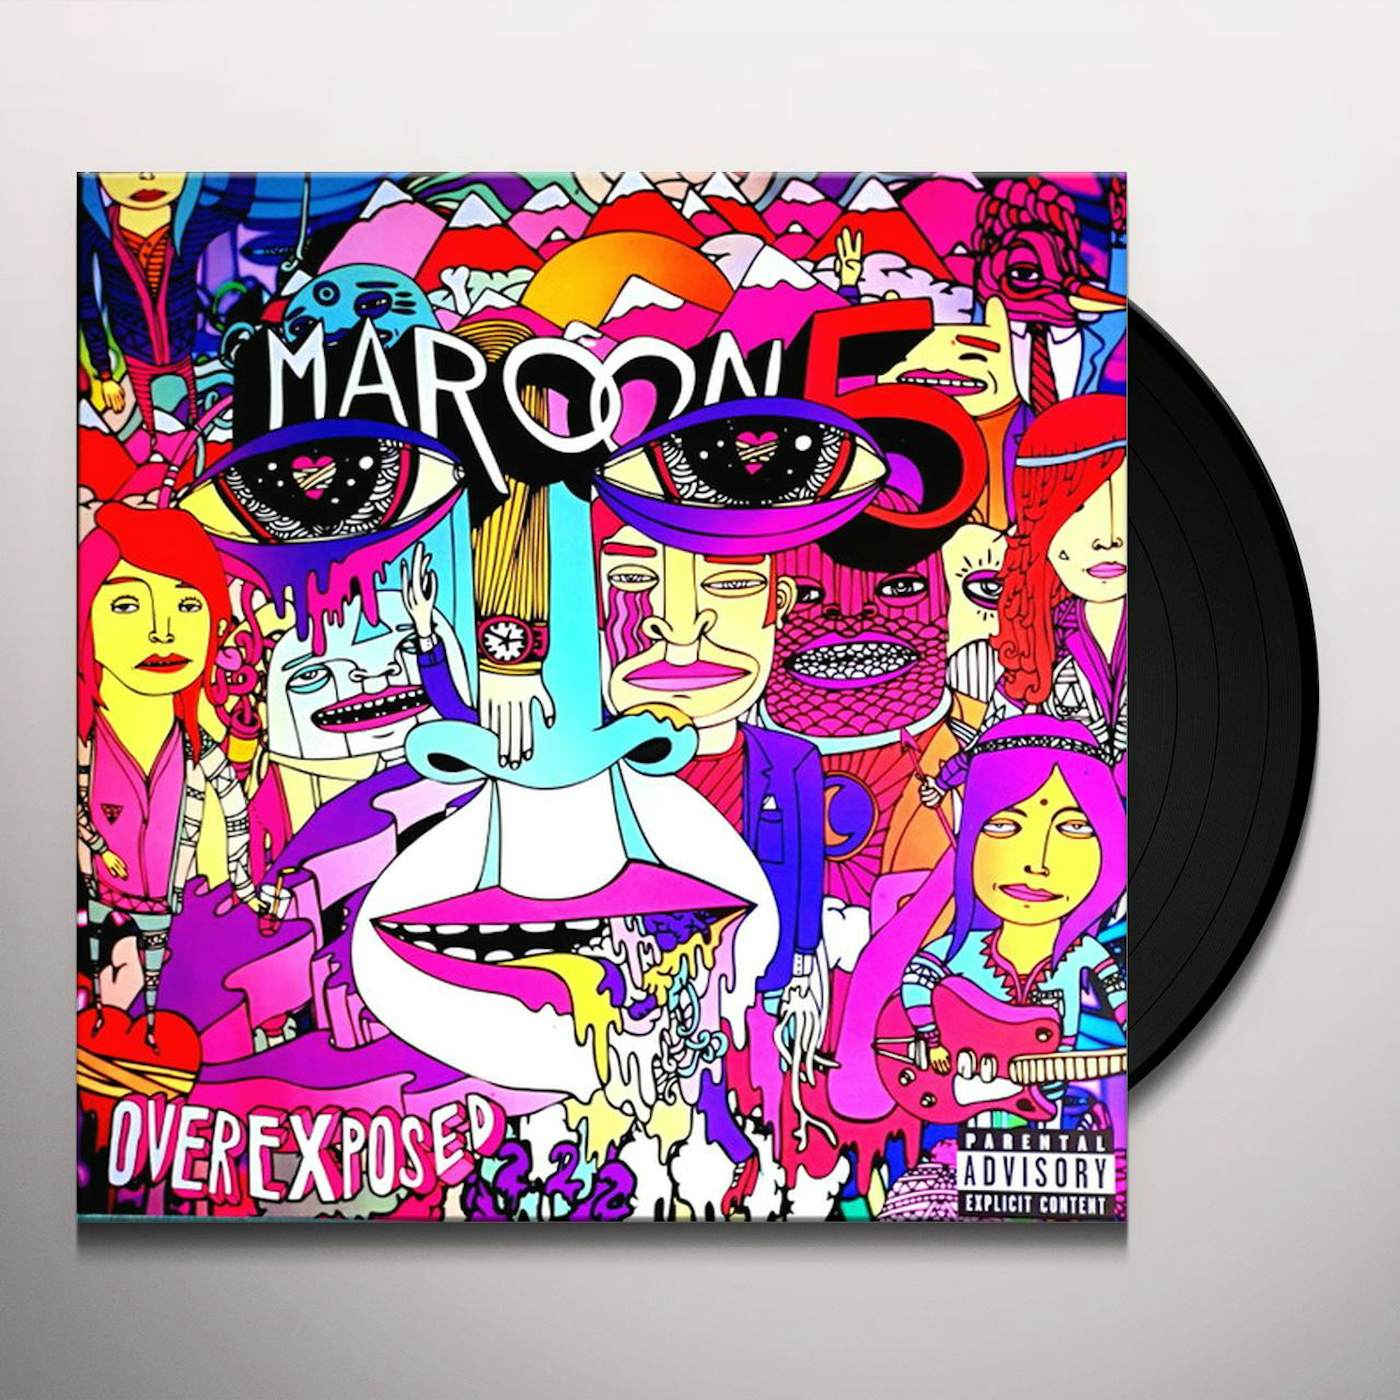 Maroon 5 Overexposed (180 Gram/Explicit Content) Vinyl Record